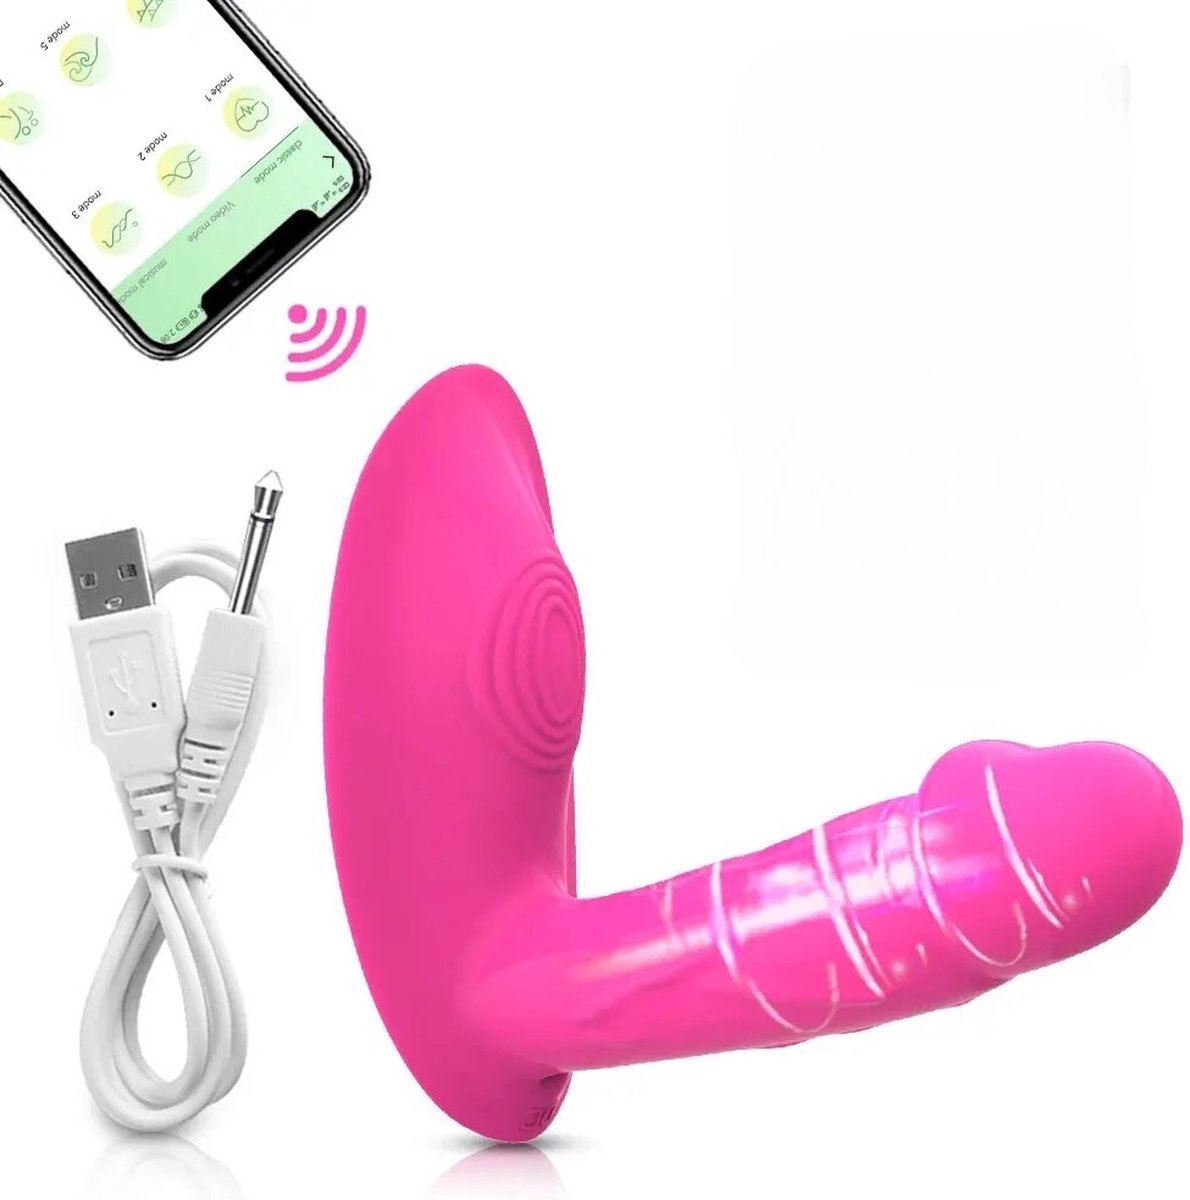 Compacte Draagbare Vibrator - Vibrator voor Vrouwen - G-spot Stimulatie - Clitorale Stimulatie - Bediening via App - 10 Intensiteiten - Discreet Onder Kleding - Volwassen Seksspeeltje en Stimulator - Seksspeeltje voor Koppels - Kleur Roze